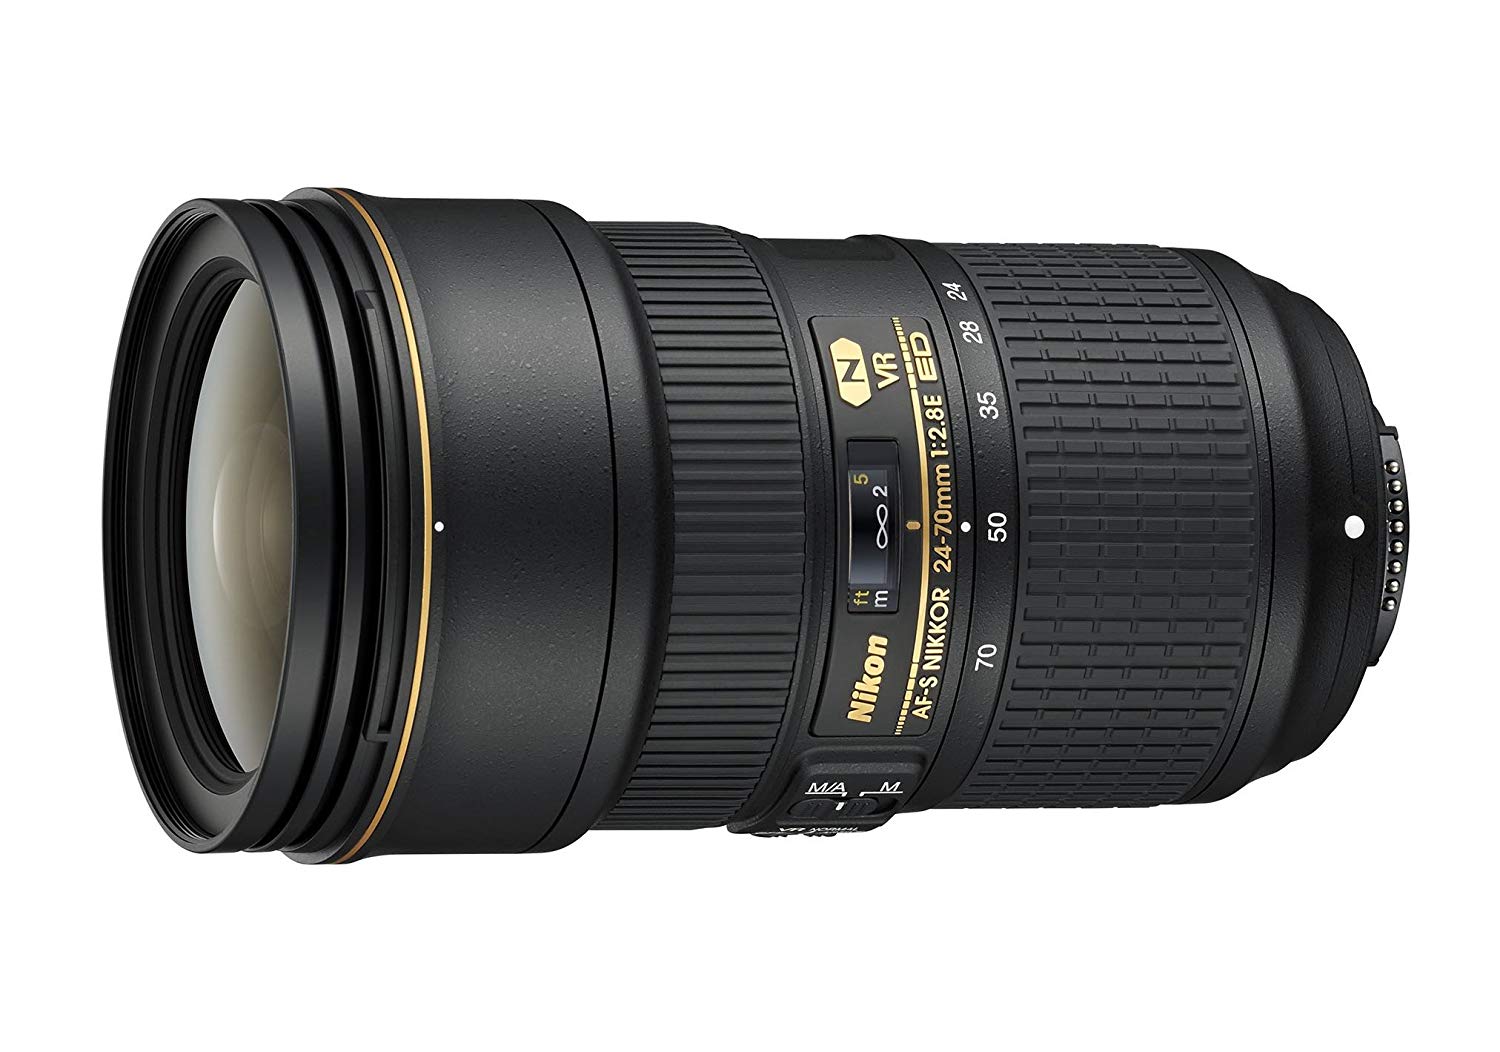 Nikon AF-S FX NIKKOR 24-70mm f/2.8E ED Vibration Reduction Zoom Lens with Auto Focus for DSLR Cameras